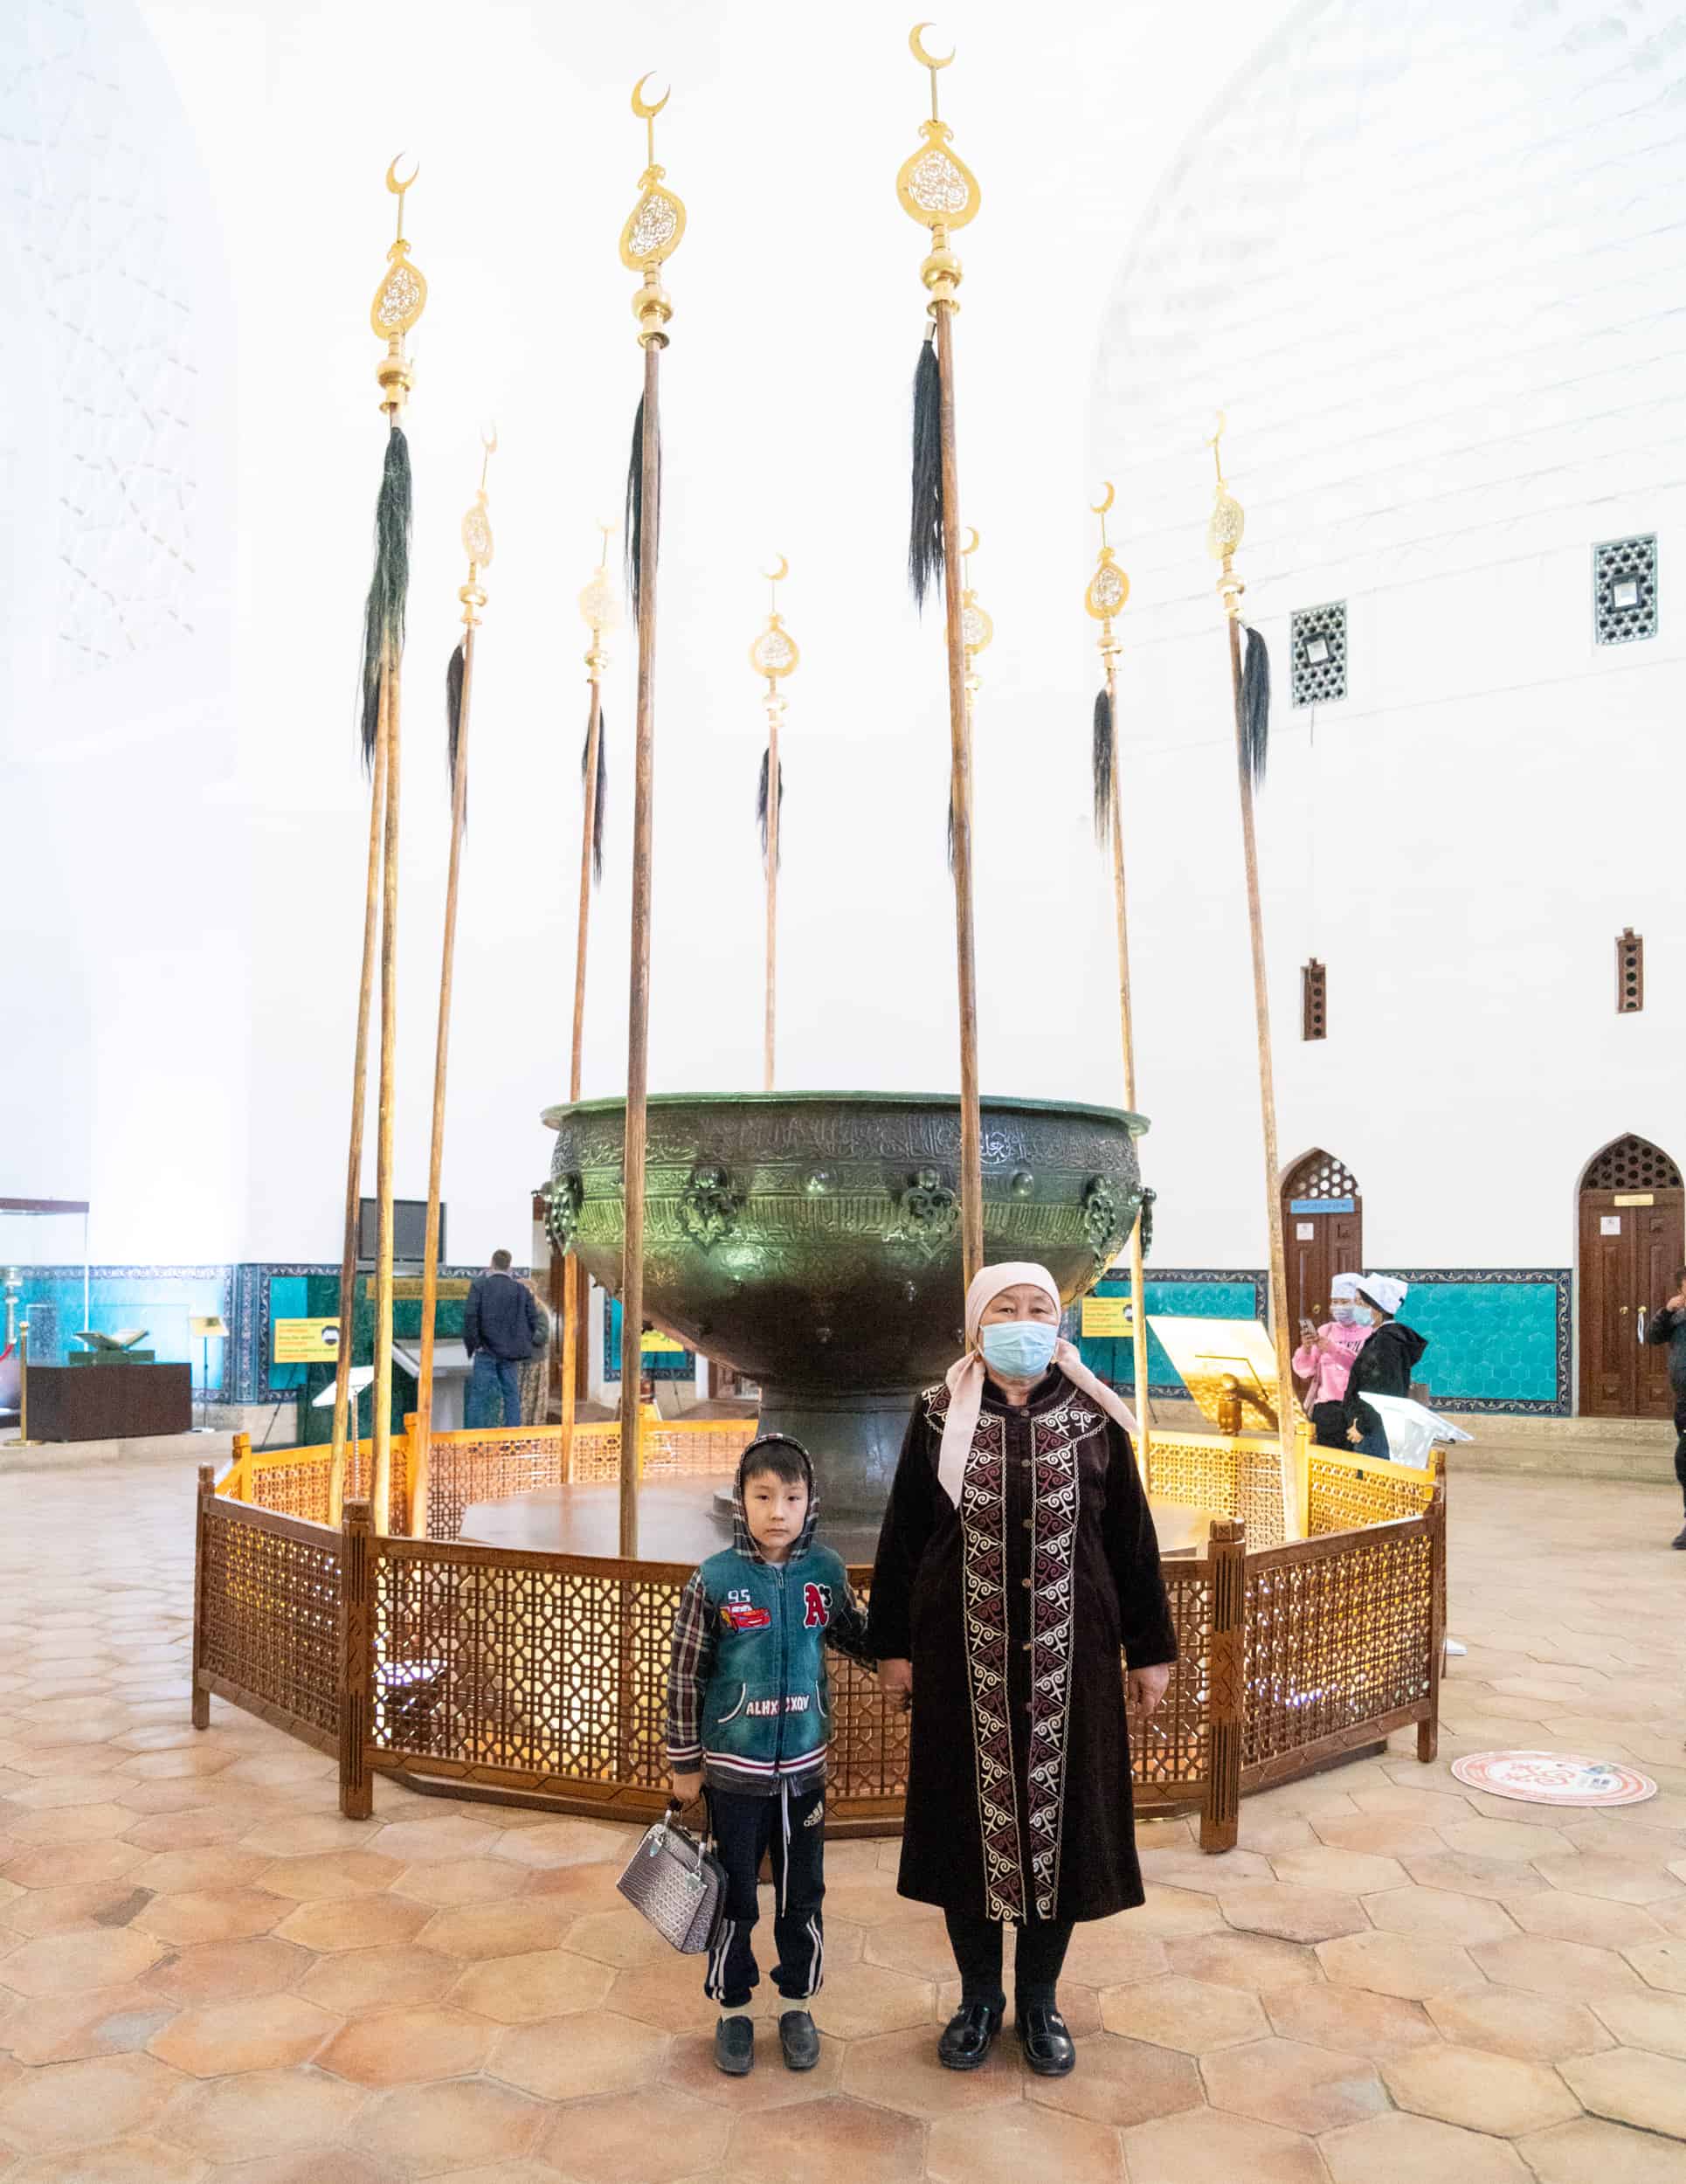 Kazakhstan - Turkistan - Mausoleum Khoja Ahmed Yasawi - Grandmother and child by large cauldron tay kazan